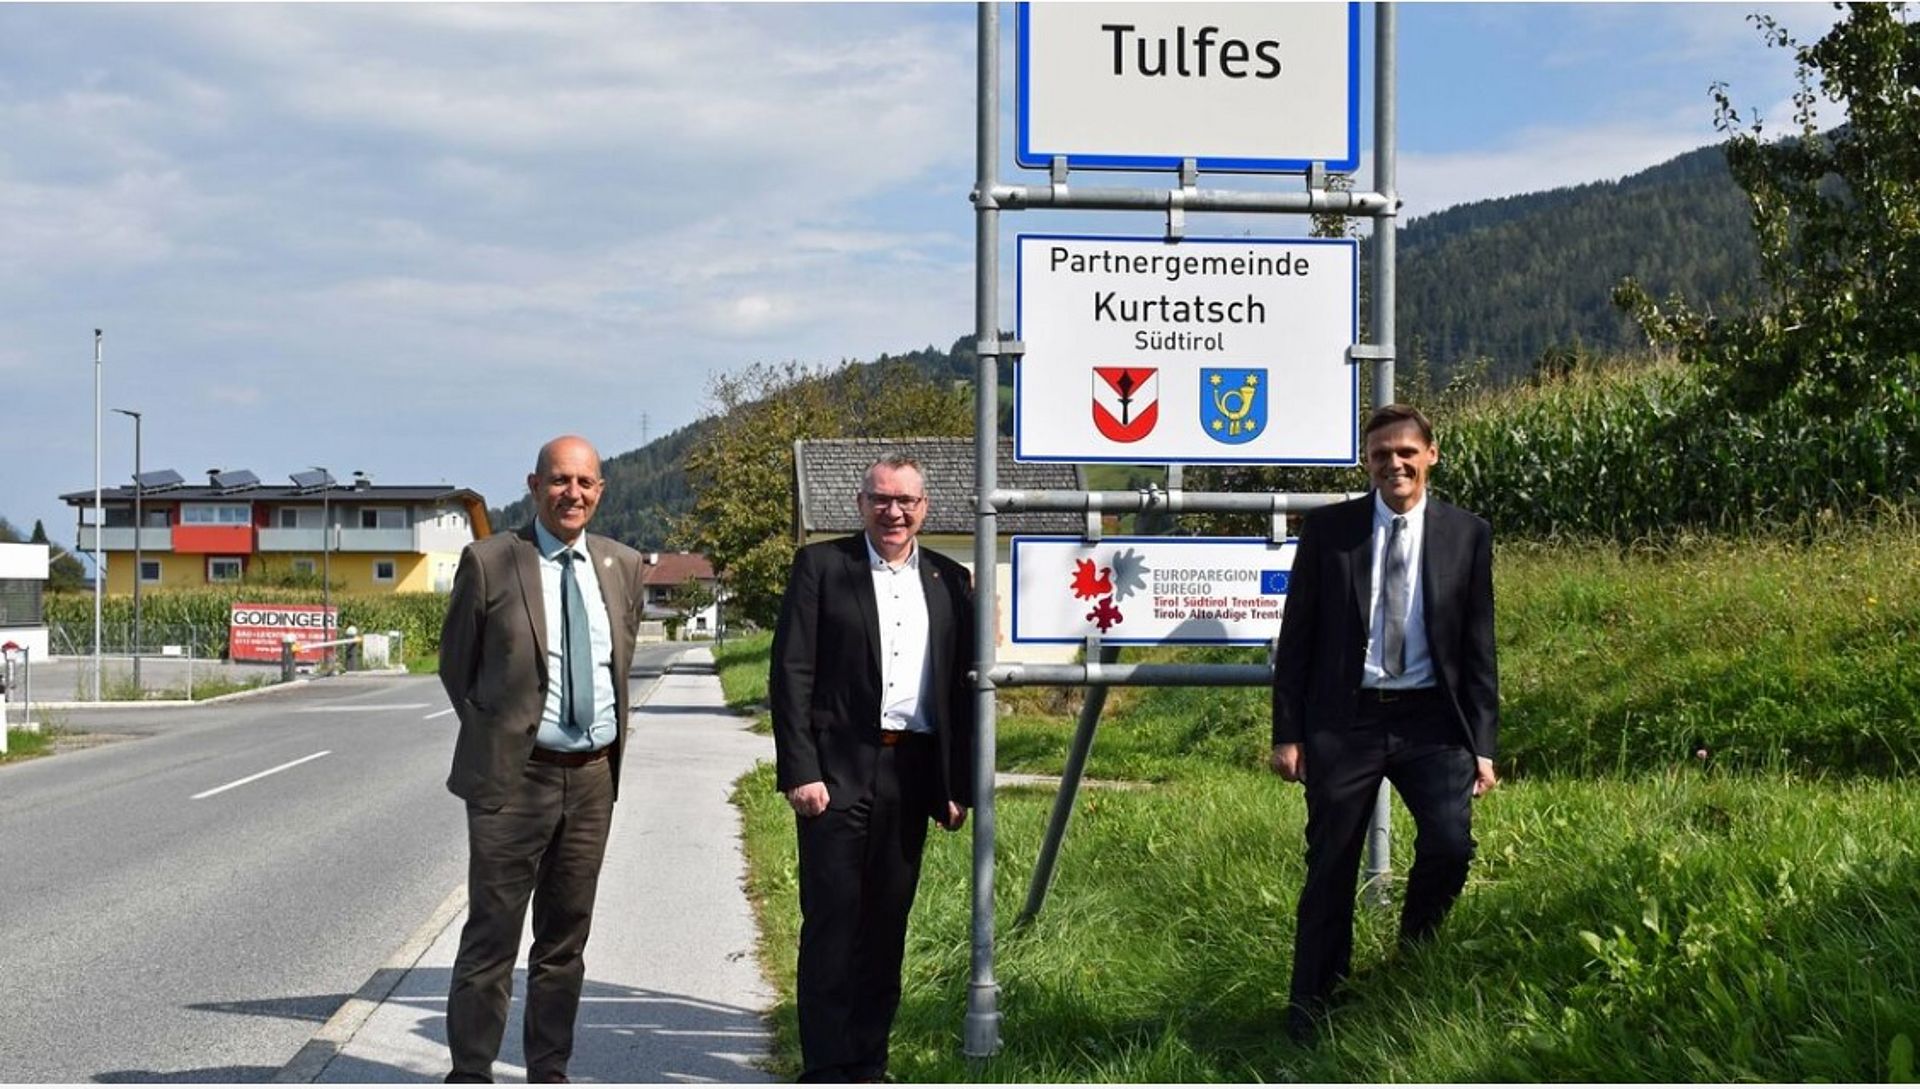 Il consigliere dell'Euregio Fritz Tiefenthaler, l'assessore tirolese con delega ai comuni LR Johannes Tratter e il sindaco di Tufles, Martin Wegscheider, davanti al cartello Euregio del partenariato tra comuni.